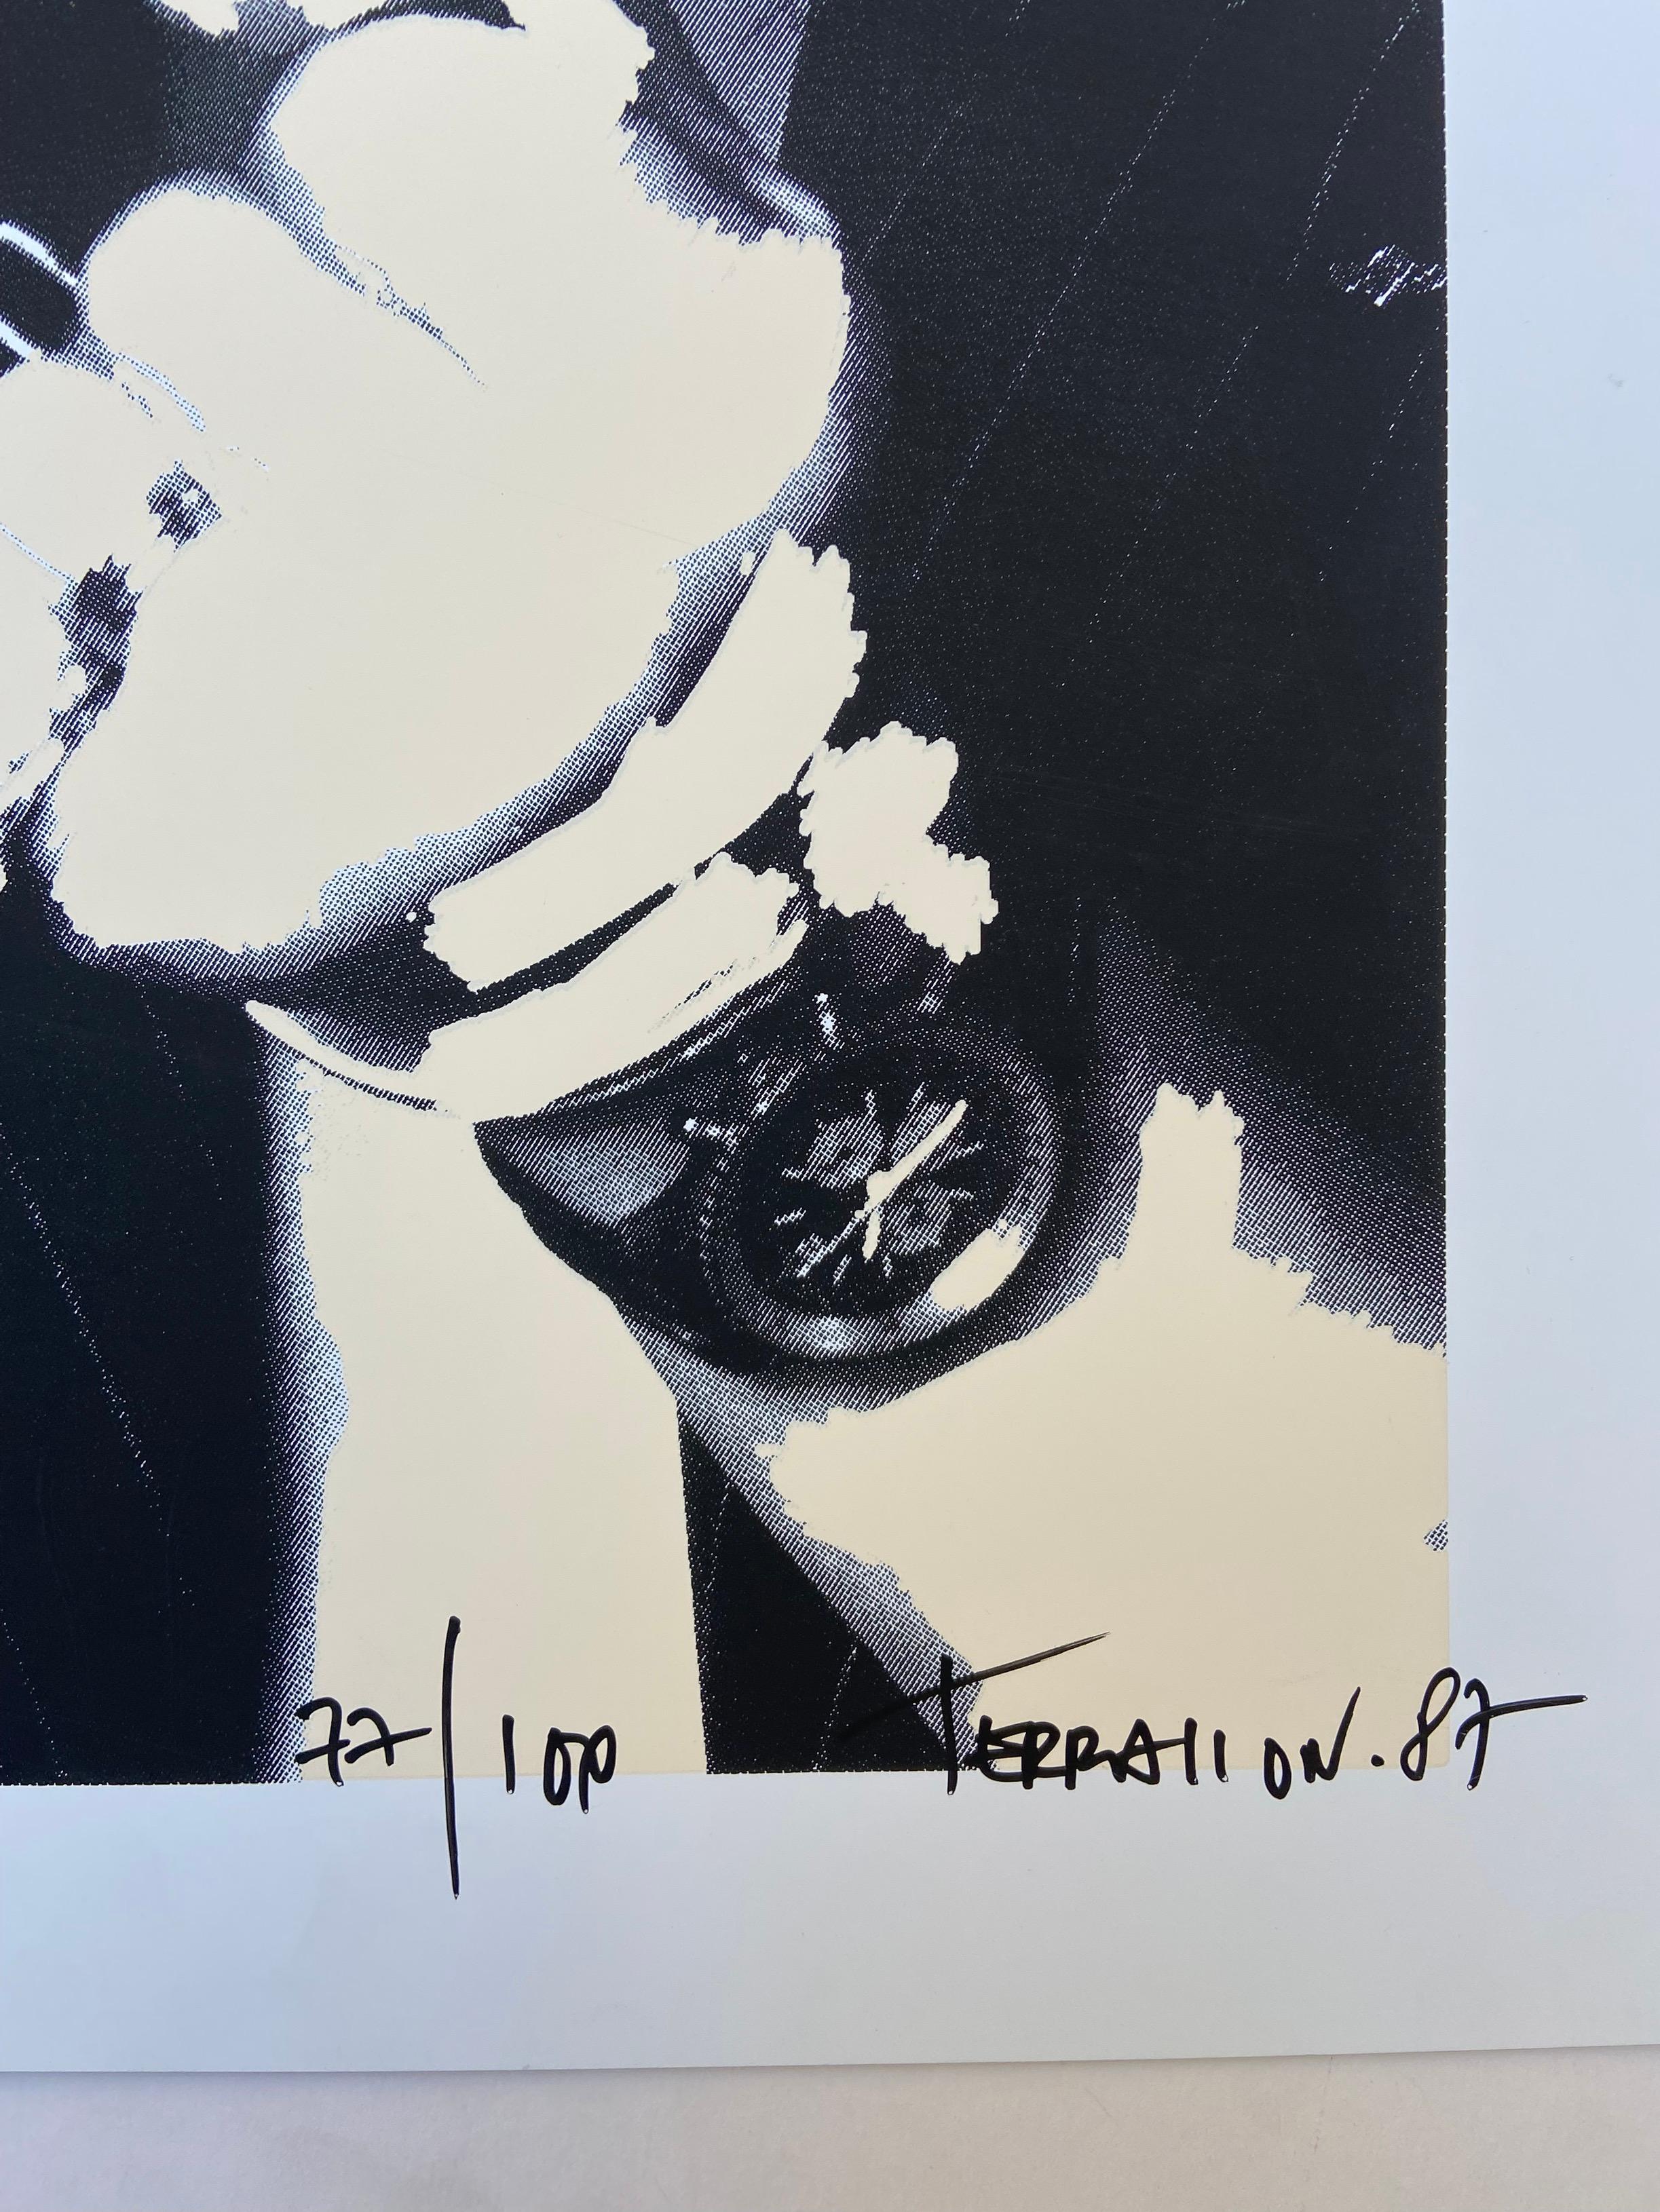 Gainsbourg - Pierre Terrasson 
Sérigraphie en couleur smignée, numérotée et datée de la main de l’artiste 
50x70
1987
490€